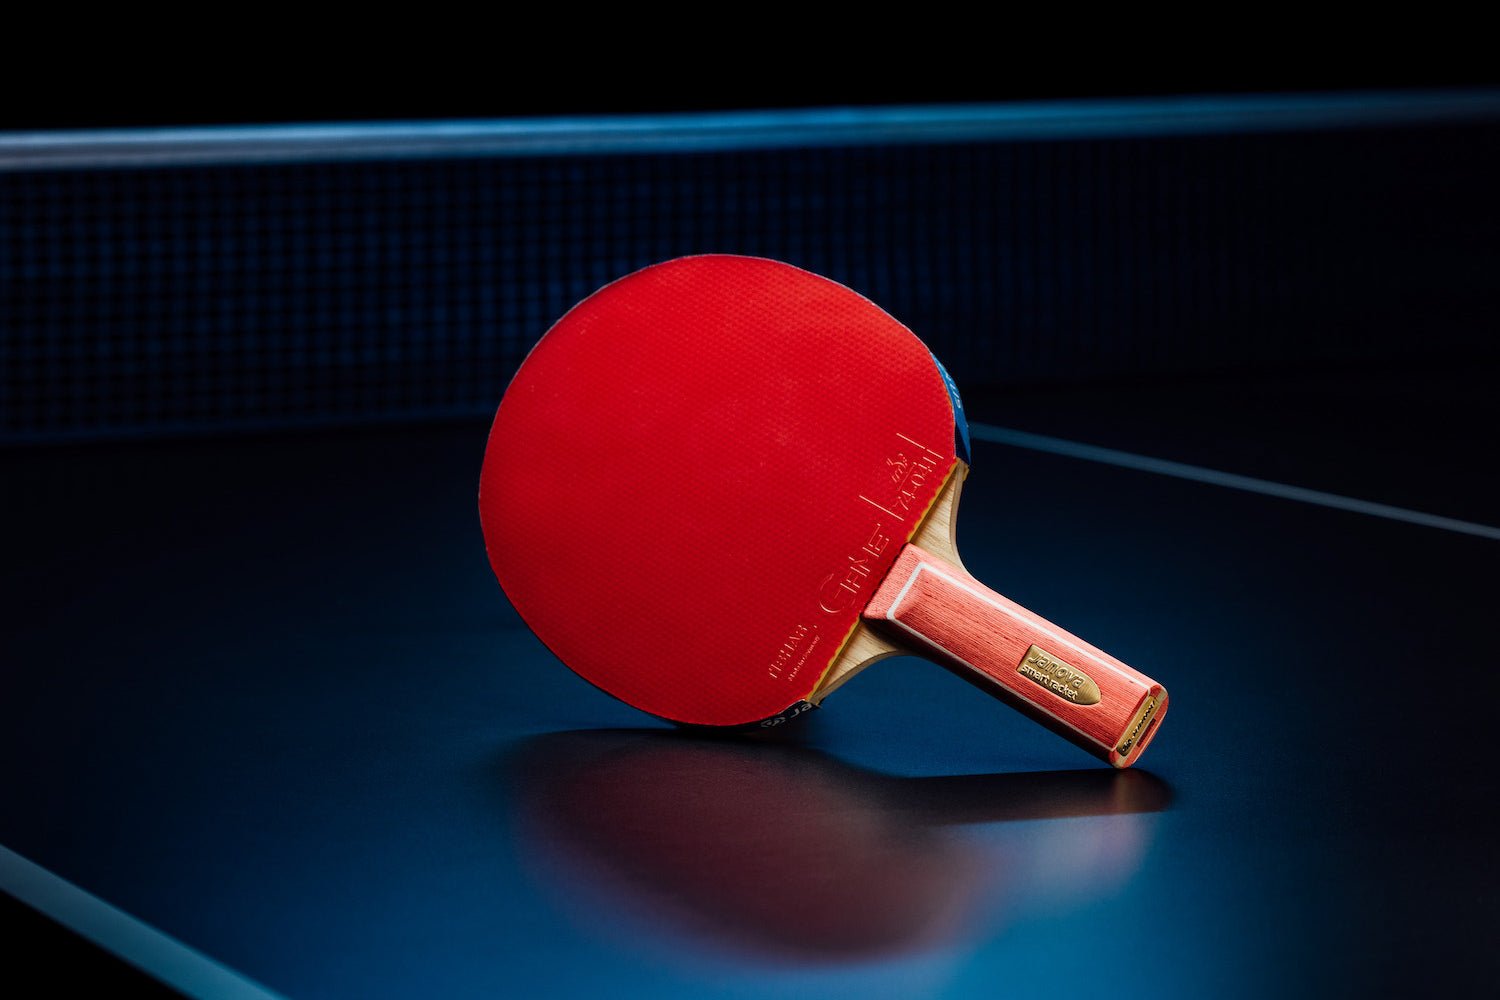 Stehender Smart Racket ROOKIE Tischtennisschläger mit geradem Griff, Janova Sensor, USB-C-Buchse auf Tischtennistisch